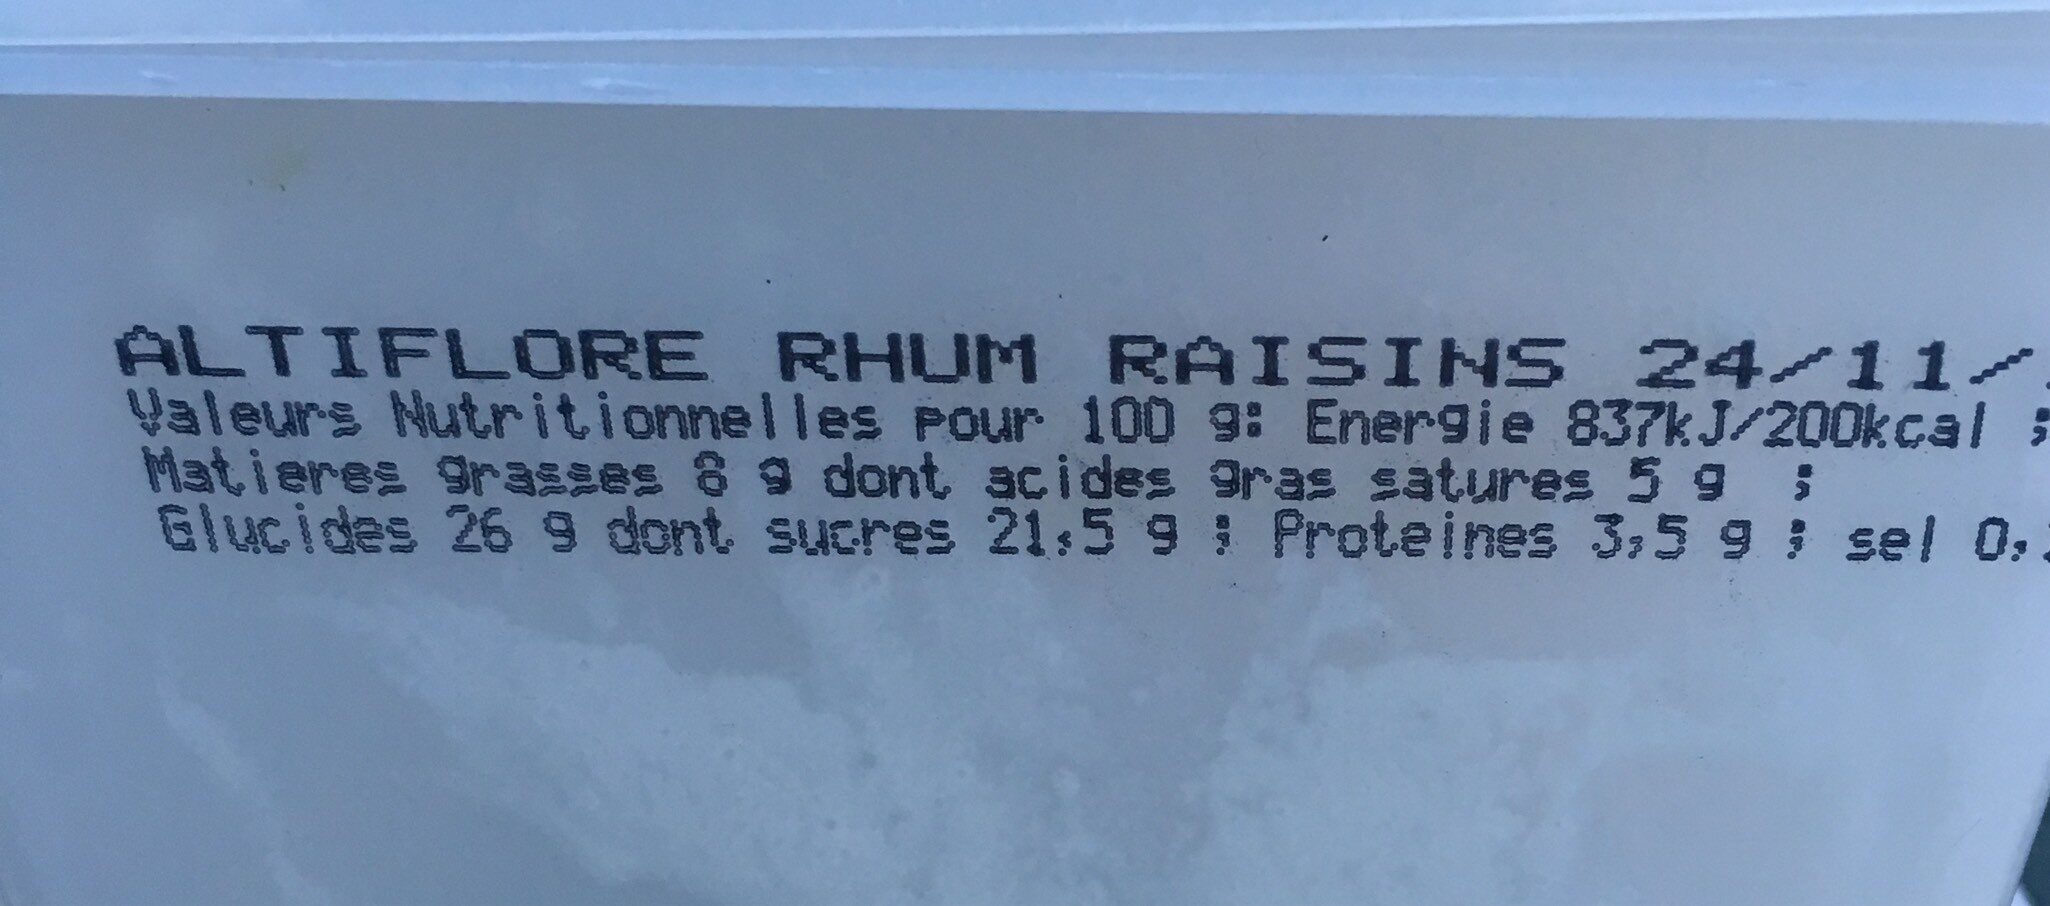 Glace rhum raisin - Informations nutritionnelles - en